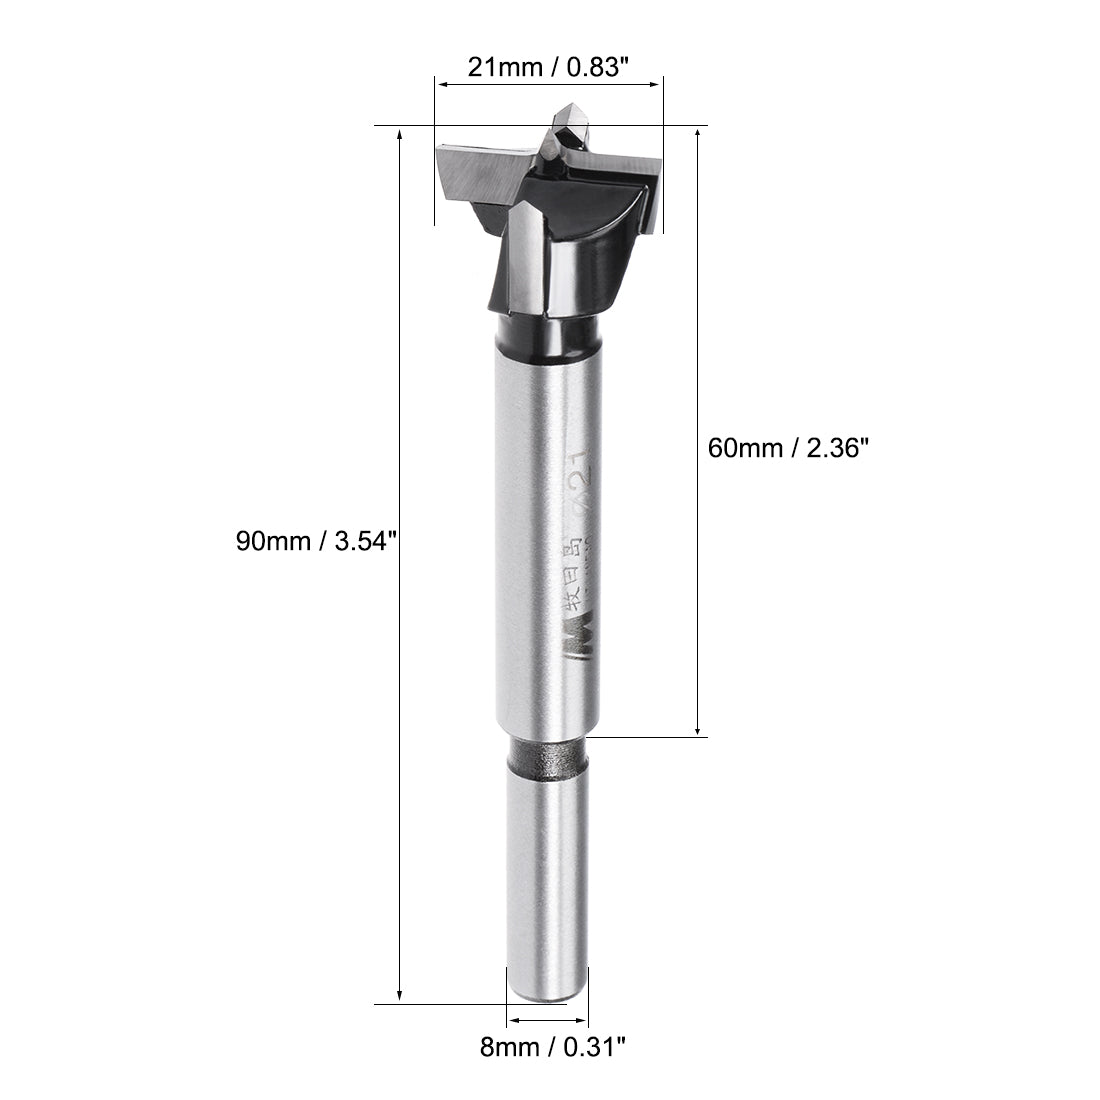 uxcell Uxcell Forstner Drill Bits, 21mm Diameter, 8mm x 30mm Shank